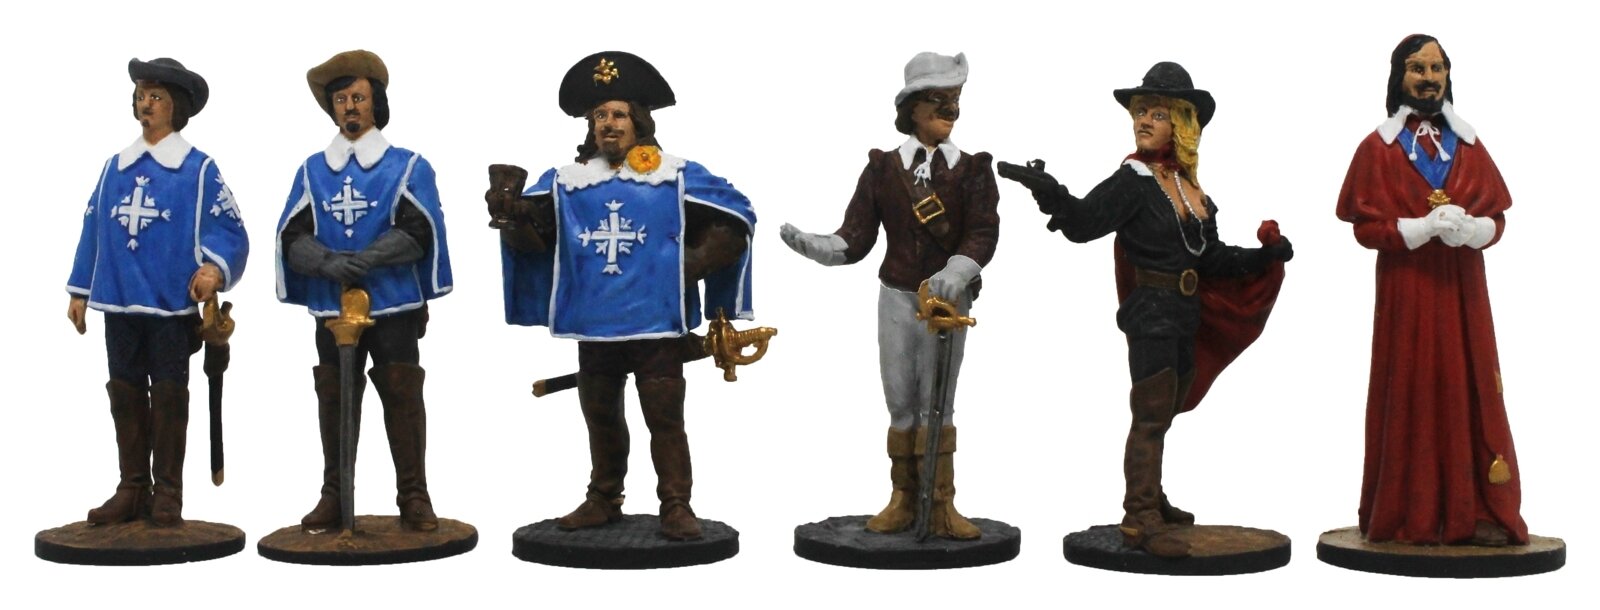 "Киногерои: Четыре мушкетера и Кардинал" №16РТ (6 п1) в картонной коробке набор оловянных солдатиков полуколлекционный покрас